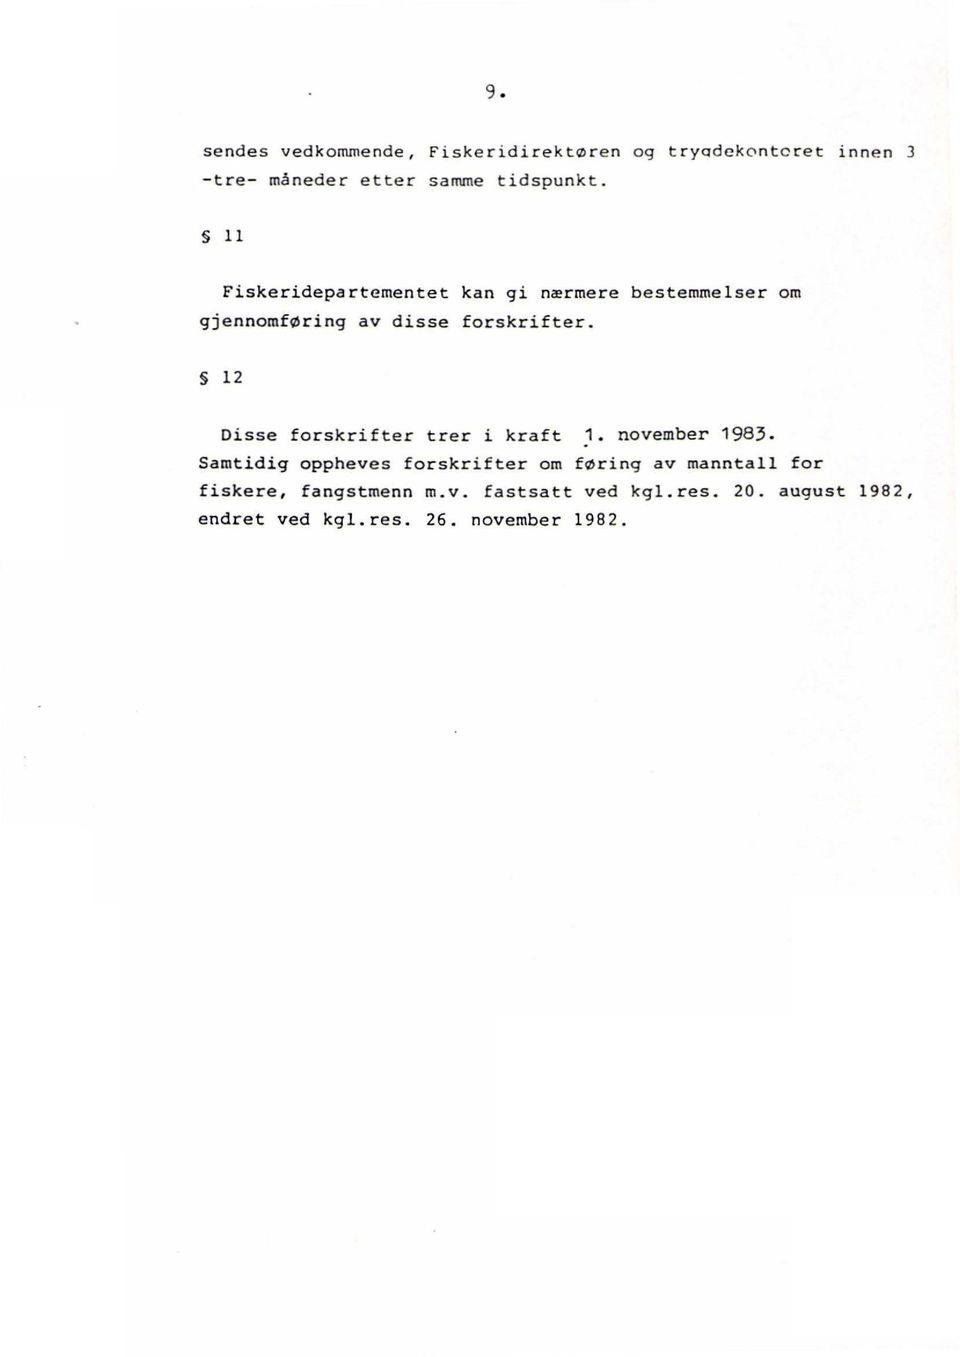 12 Disse forskrifter trer i kraft 1. november 1983.